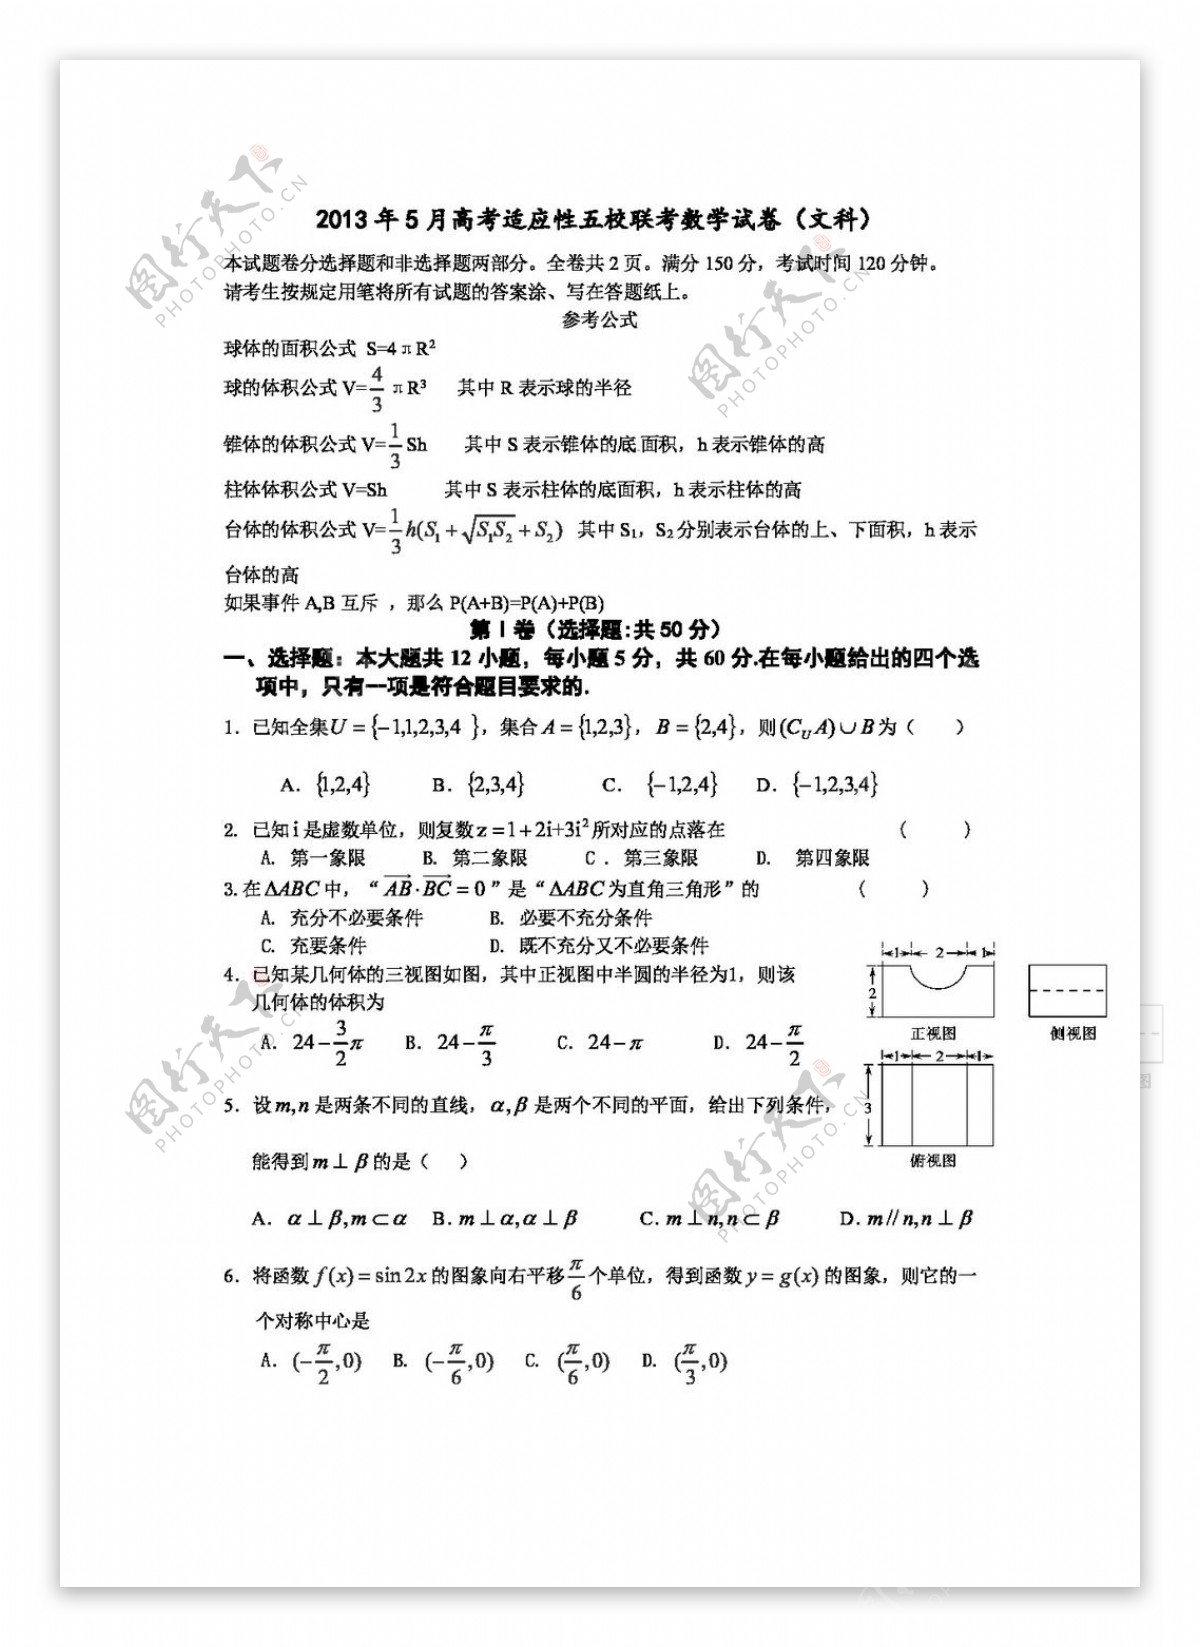 数学人教版浙江省宁波市五校高三5月适应性考试数学文试题